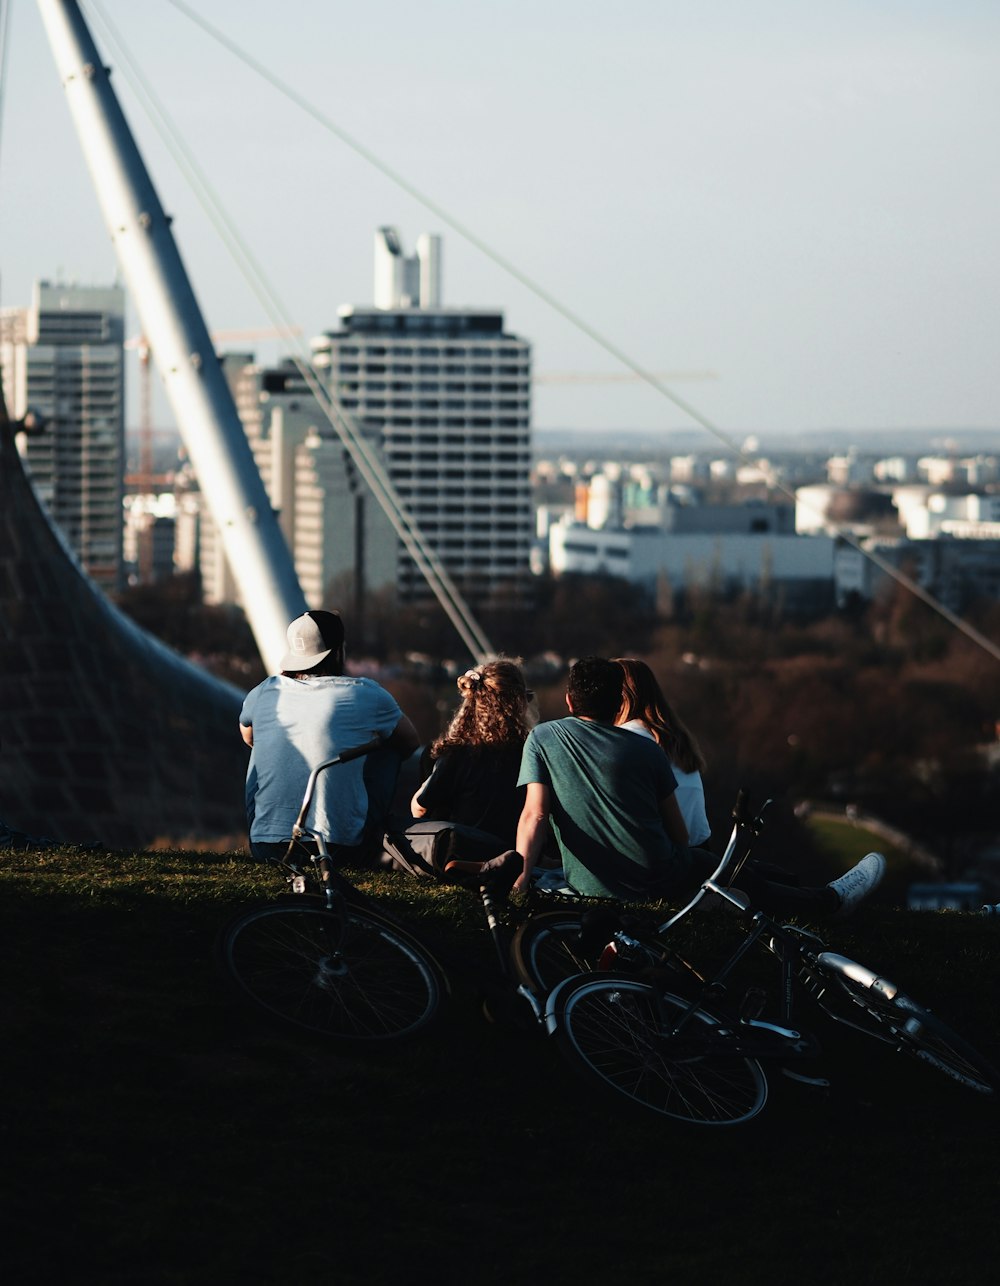 people sitting on mountain bike during daytime